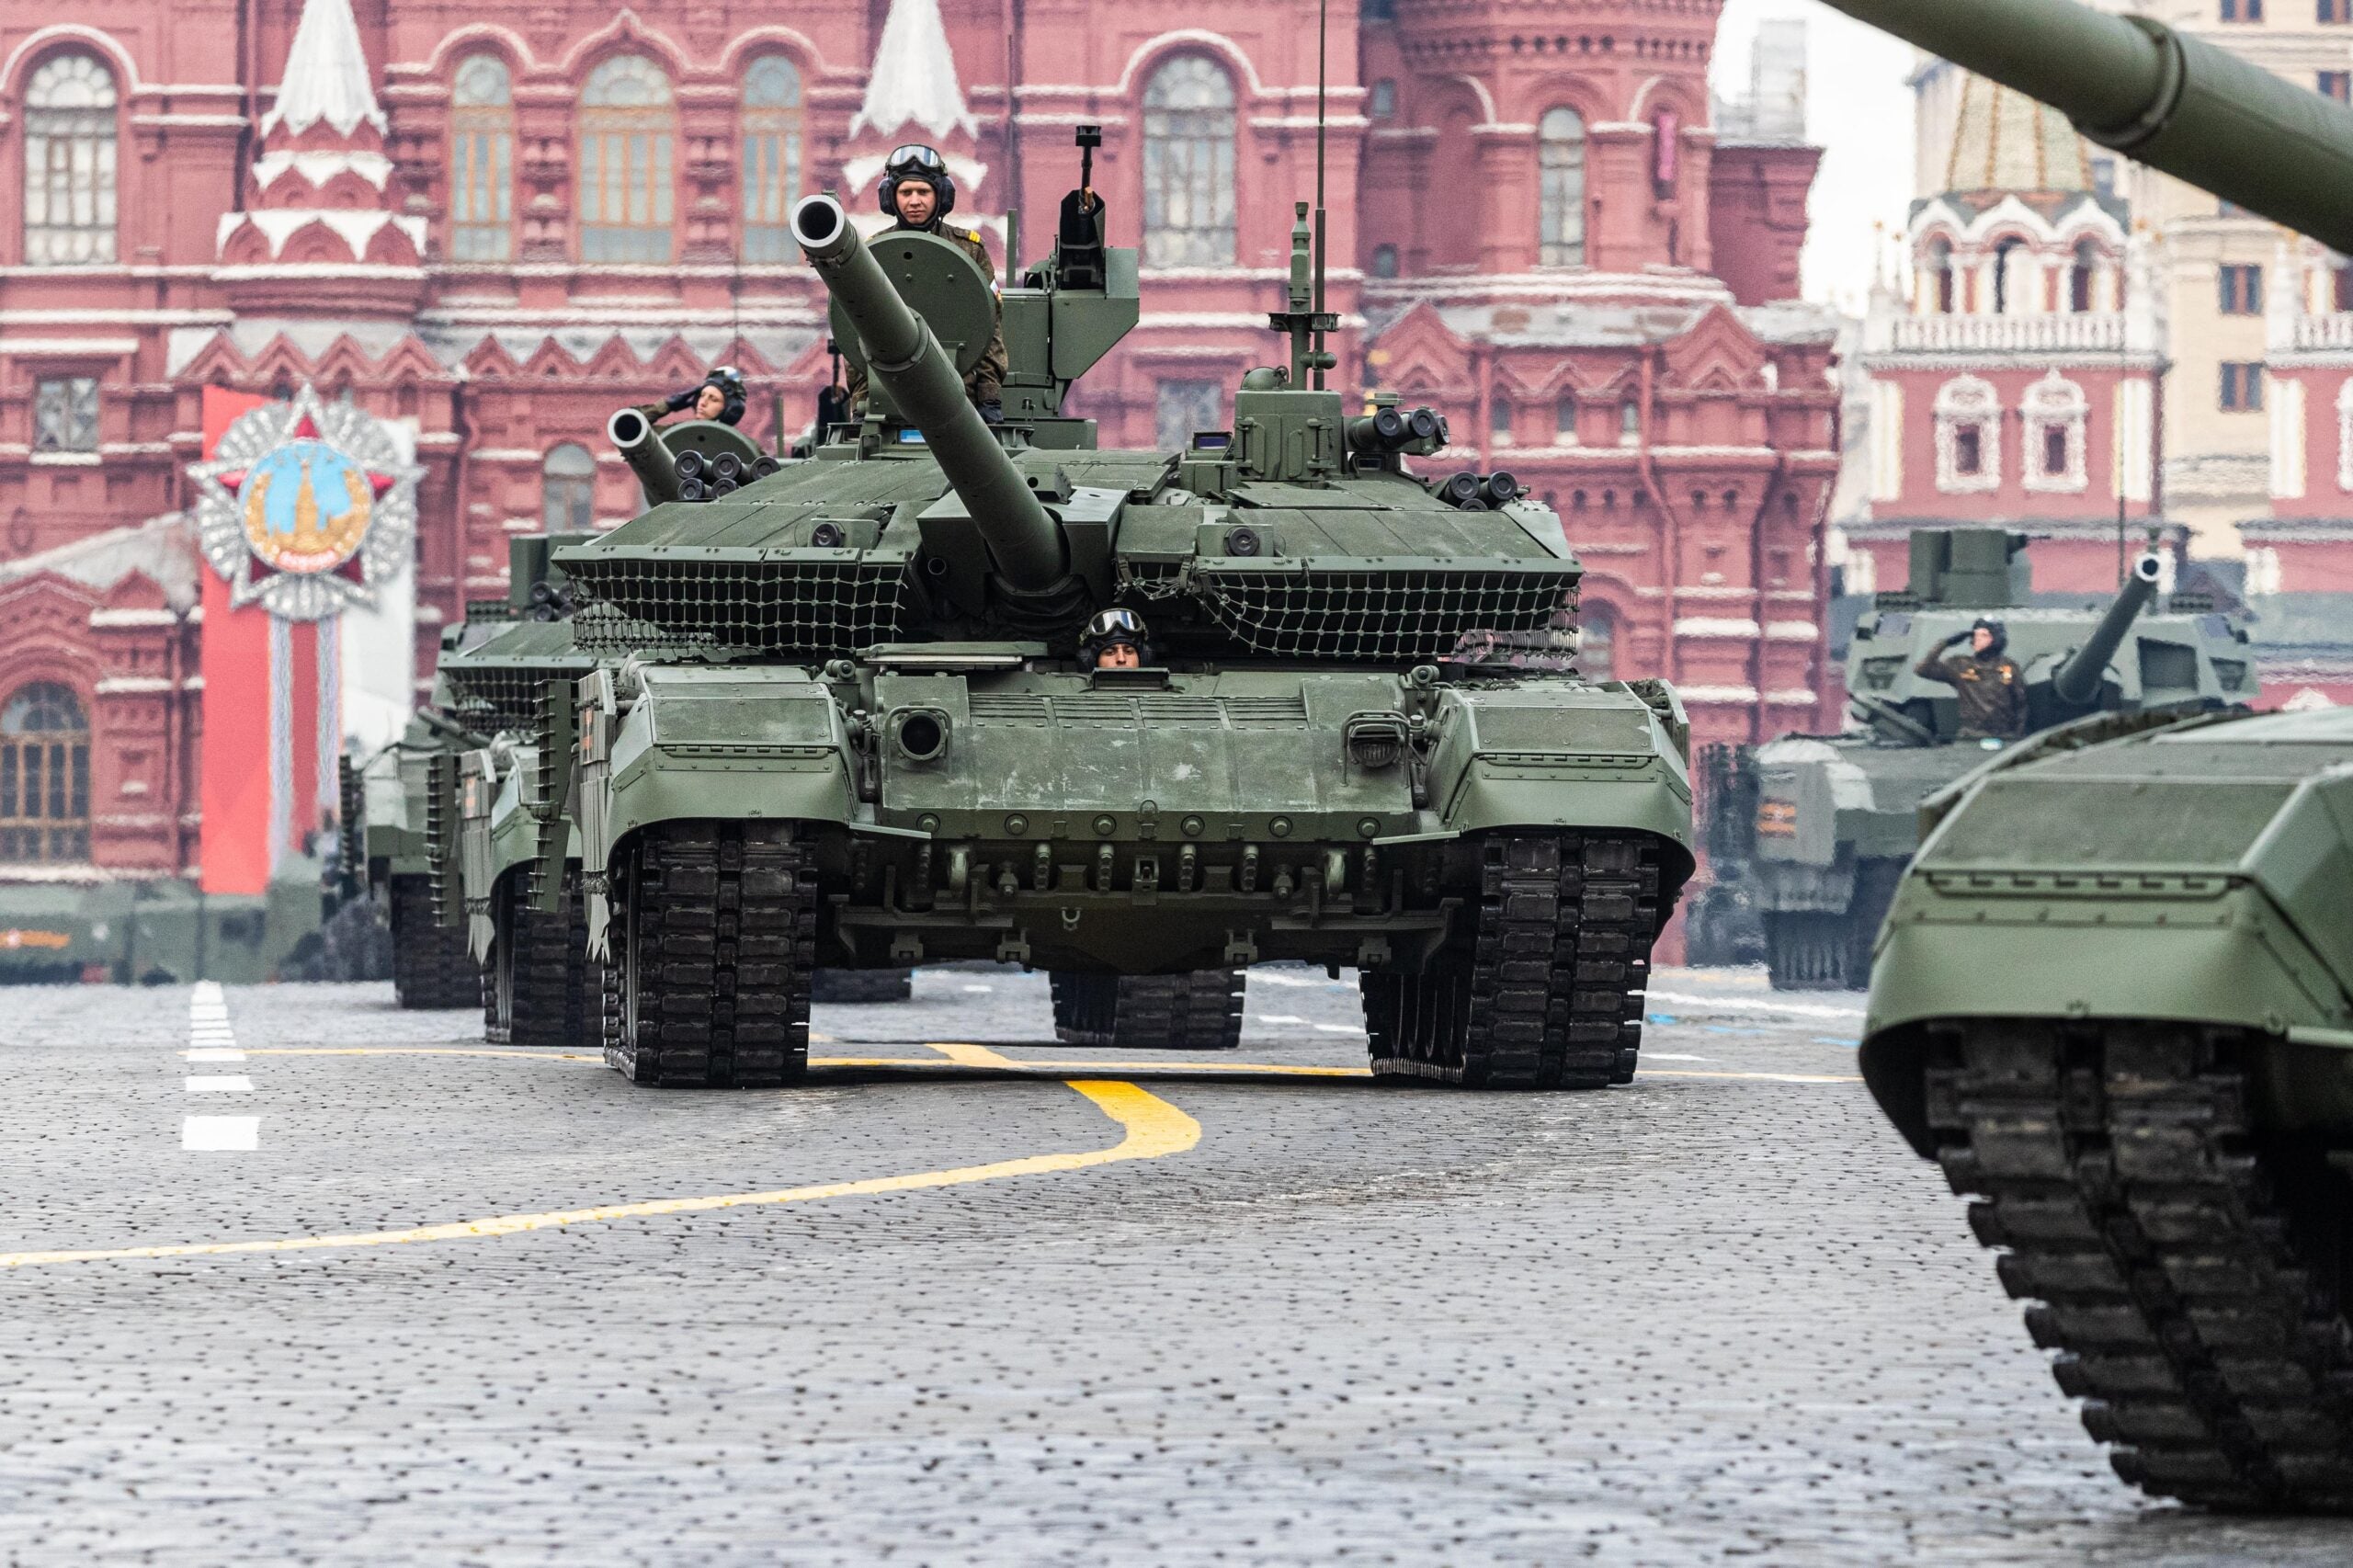 armor experts breakdown video of ukrainian m2 bradley mauling russian t-90m tank